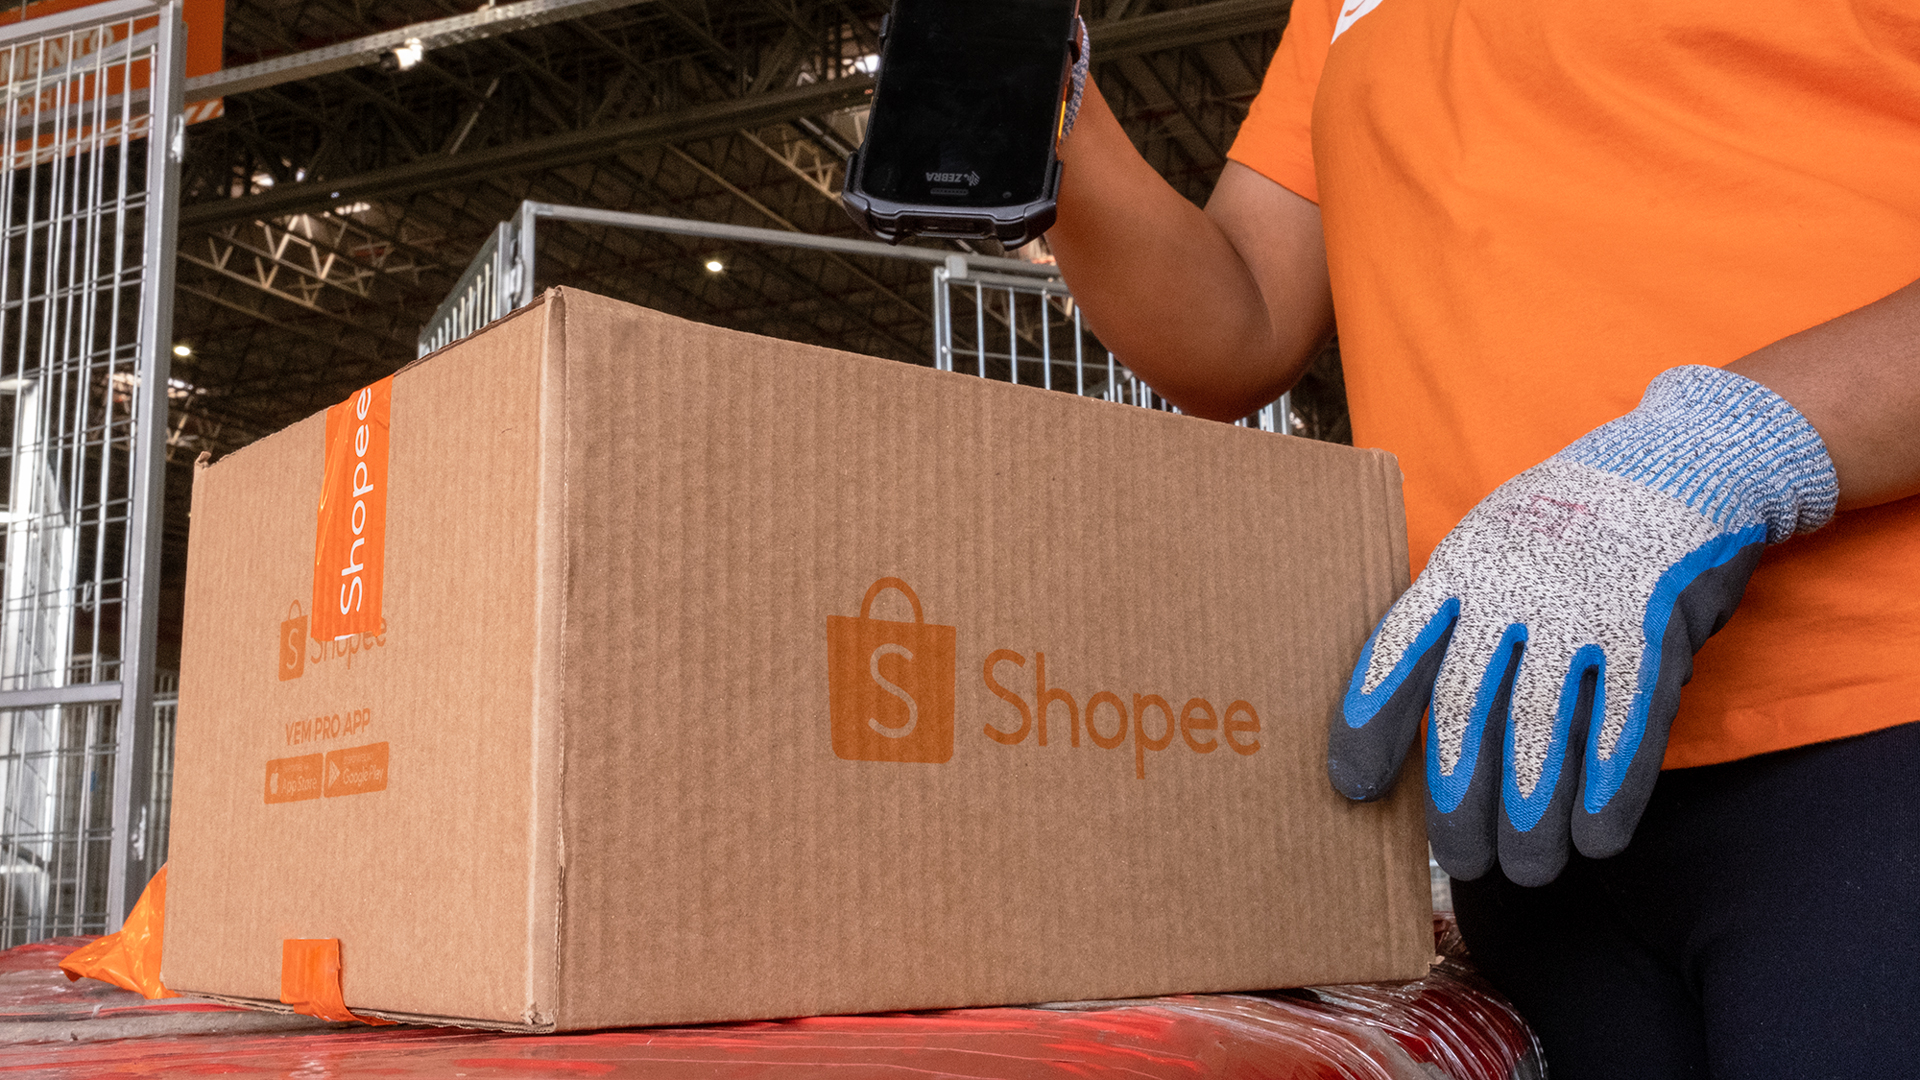 Shopee anuncia abertura de dois novos centros de distribuição no Brasil -  E-Commerce Brasil